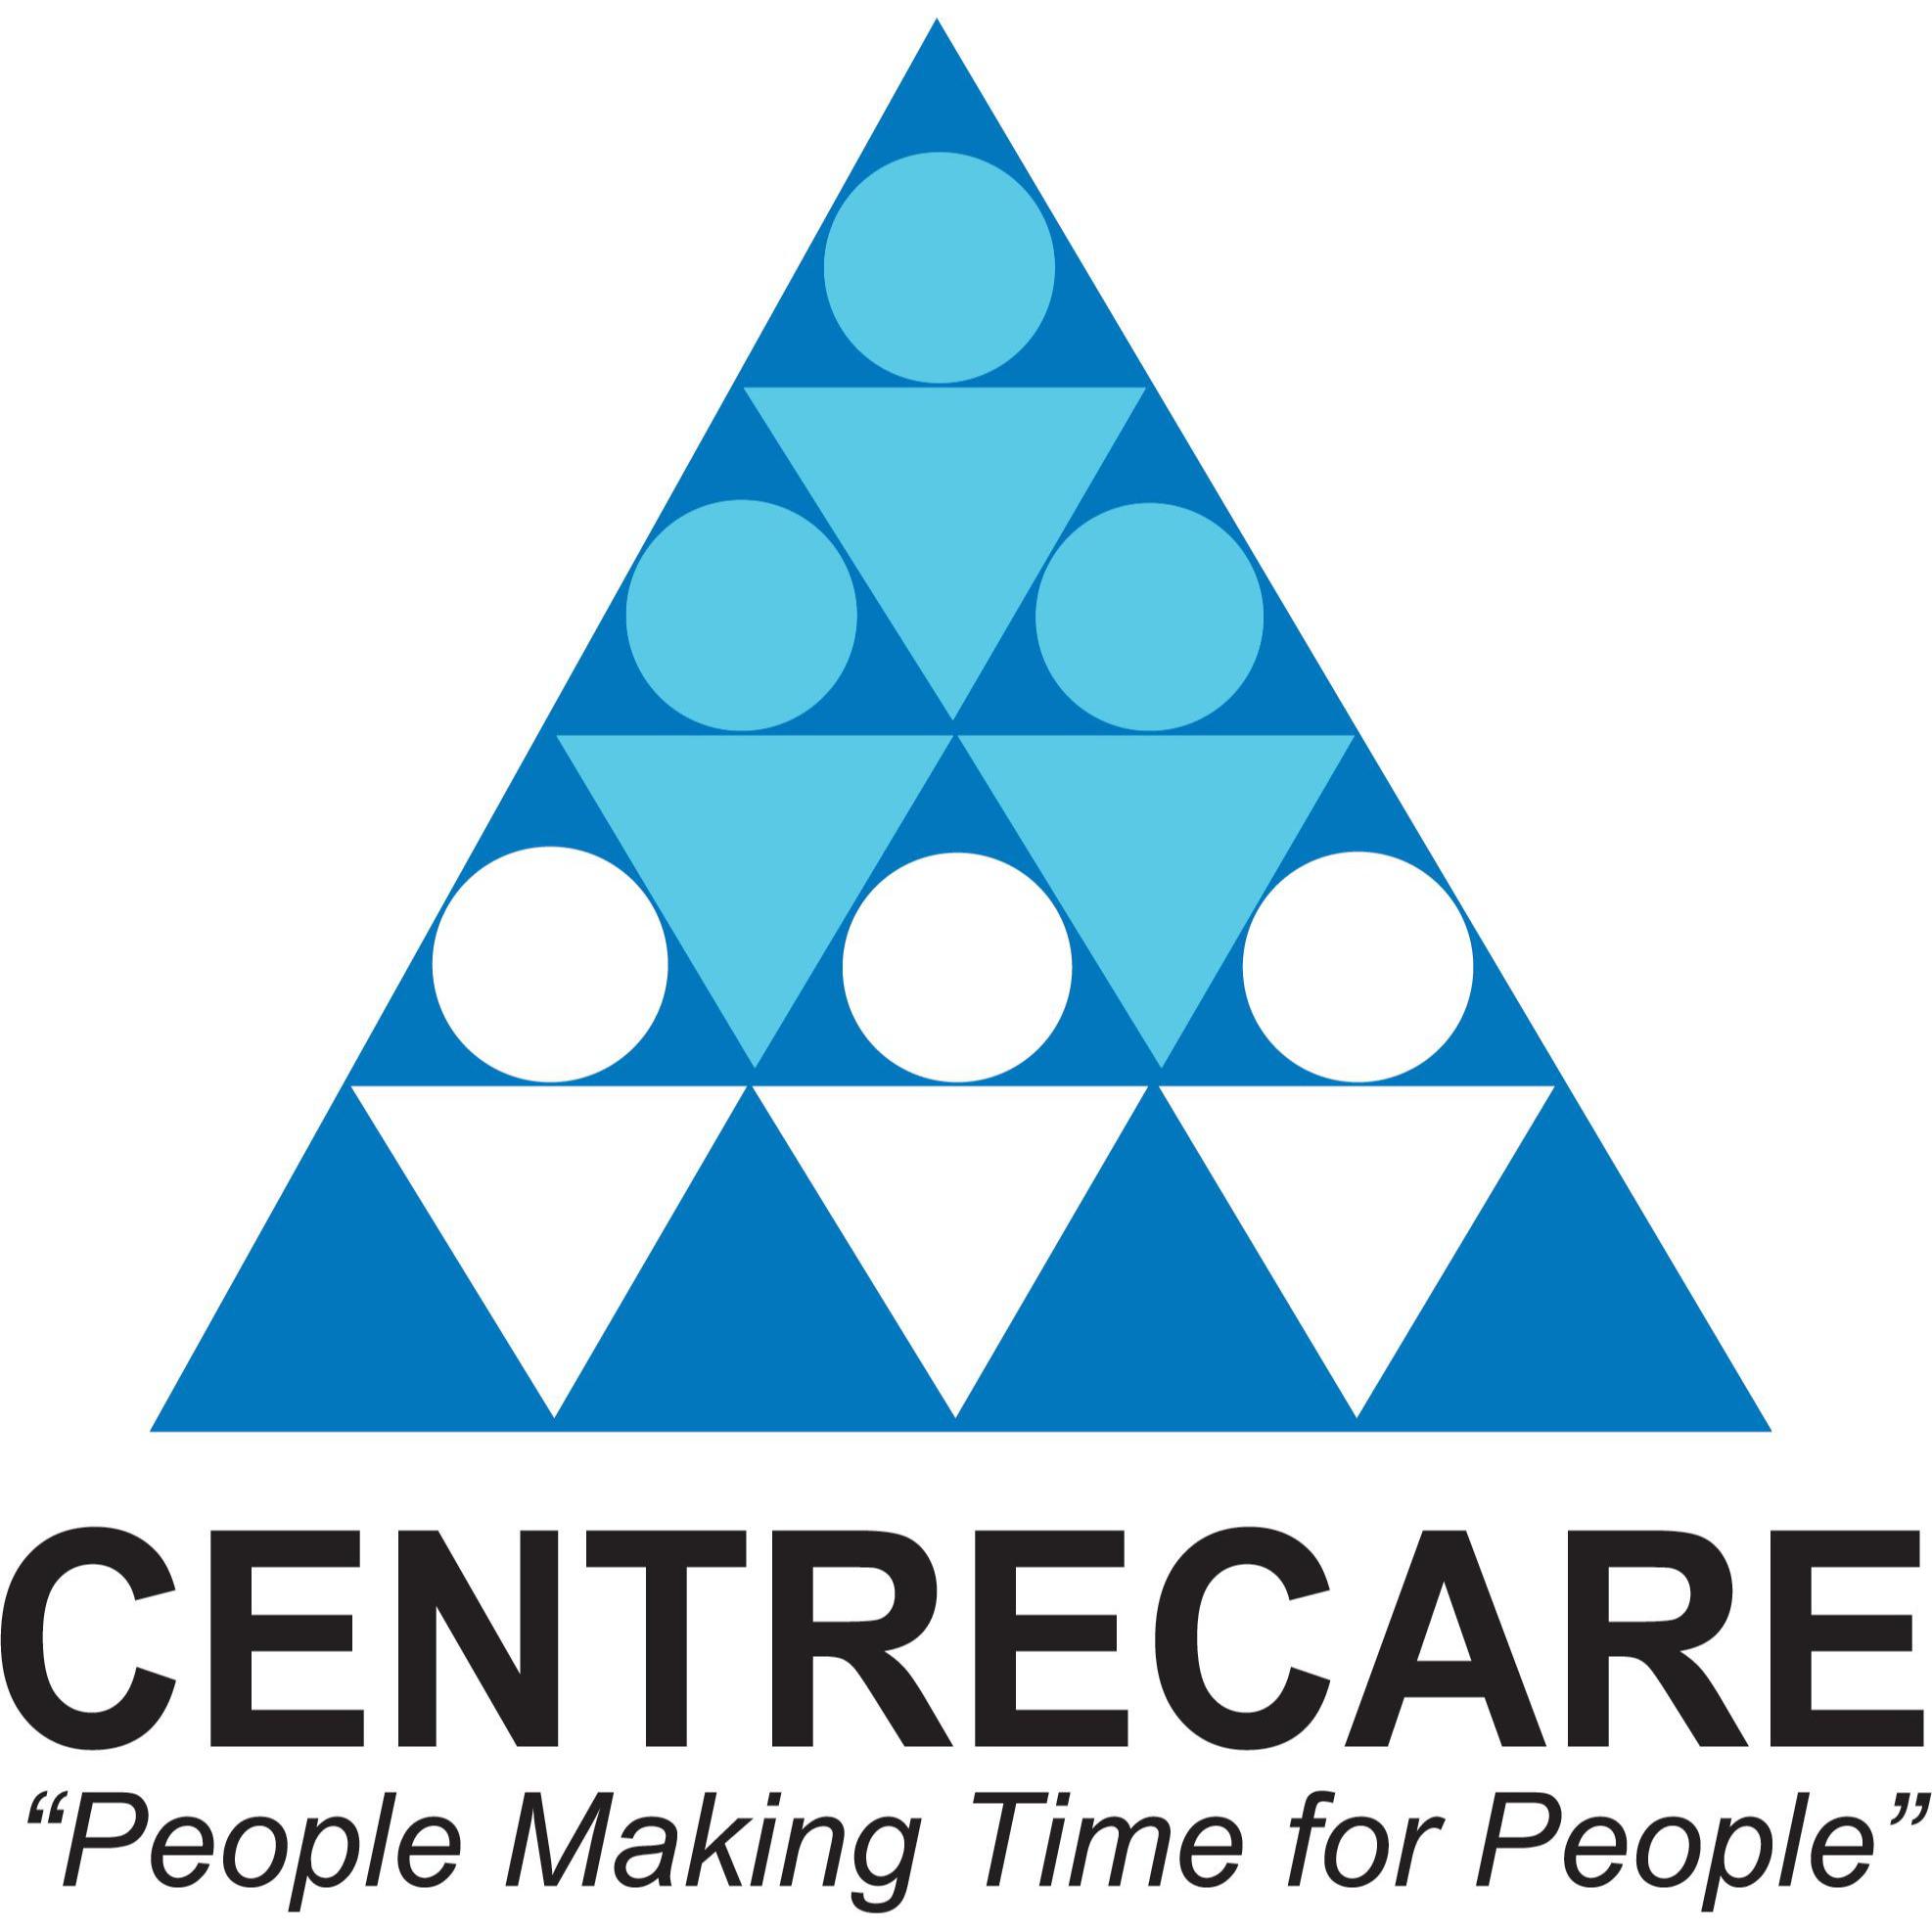 Centrecare Cannington (08) 9451 1100